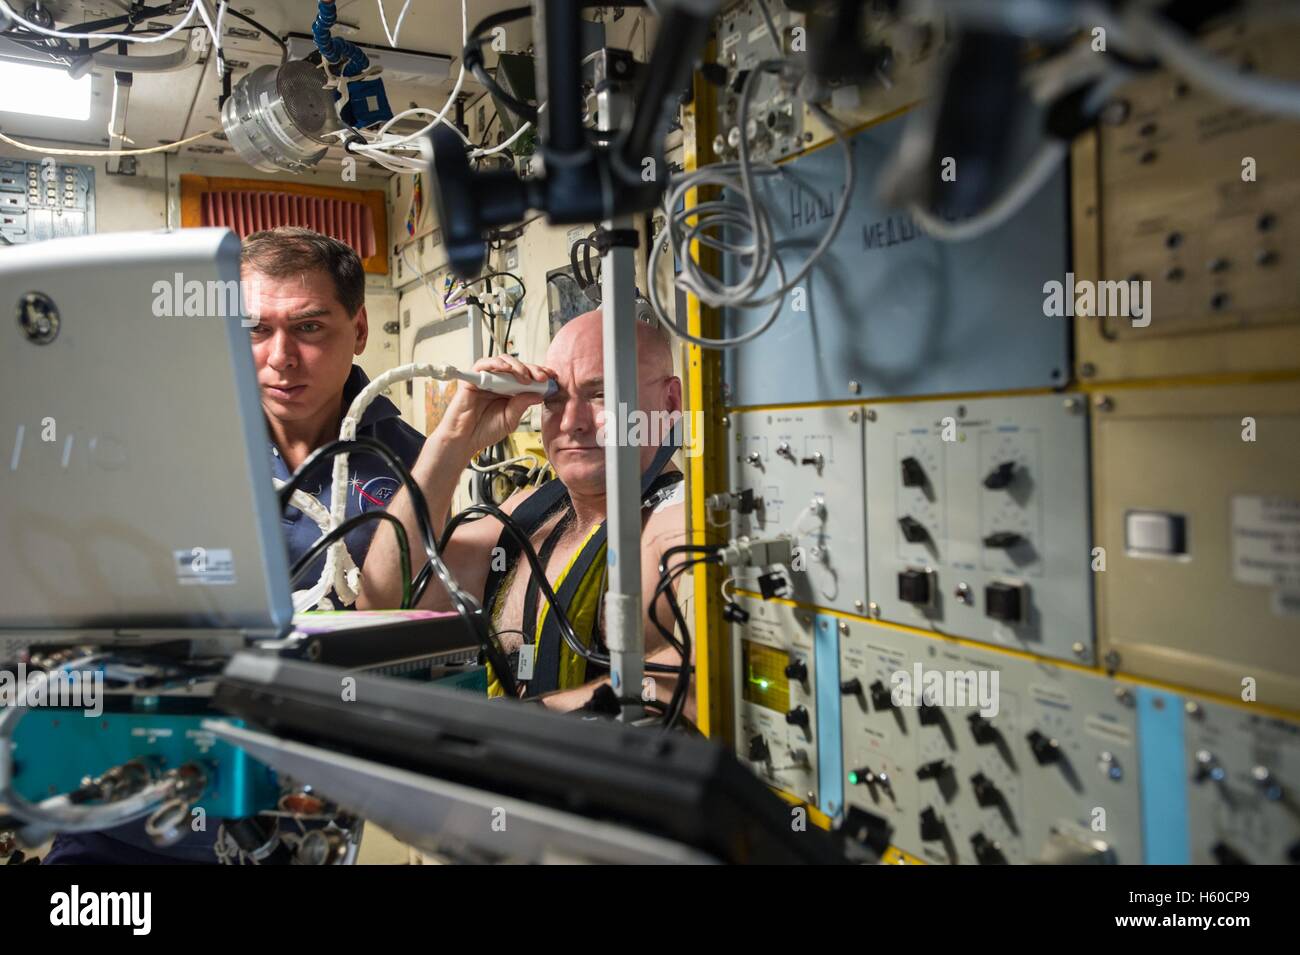 Expedición de la Estación Espacial Internacional de la NASA misión 44 primera tripulación astronauta Scott Kelly (derecha) utiliza una presión negativa en la parte inferior del cuerpo Chibis dispositivo mientras el cosmonauta ruso Mikhail Kornienko médicamente ayuda a monitorear y medir sus fluidos corporales, el 16 de septiembre del 2015, mientras que en la órbita de la tierra. Foto de stock